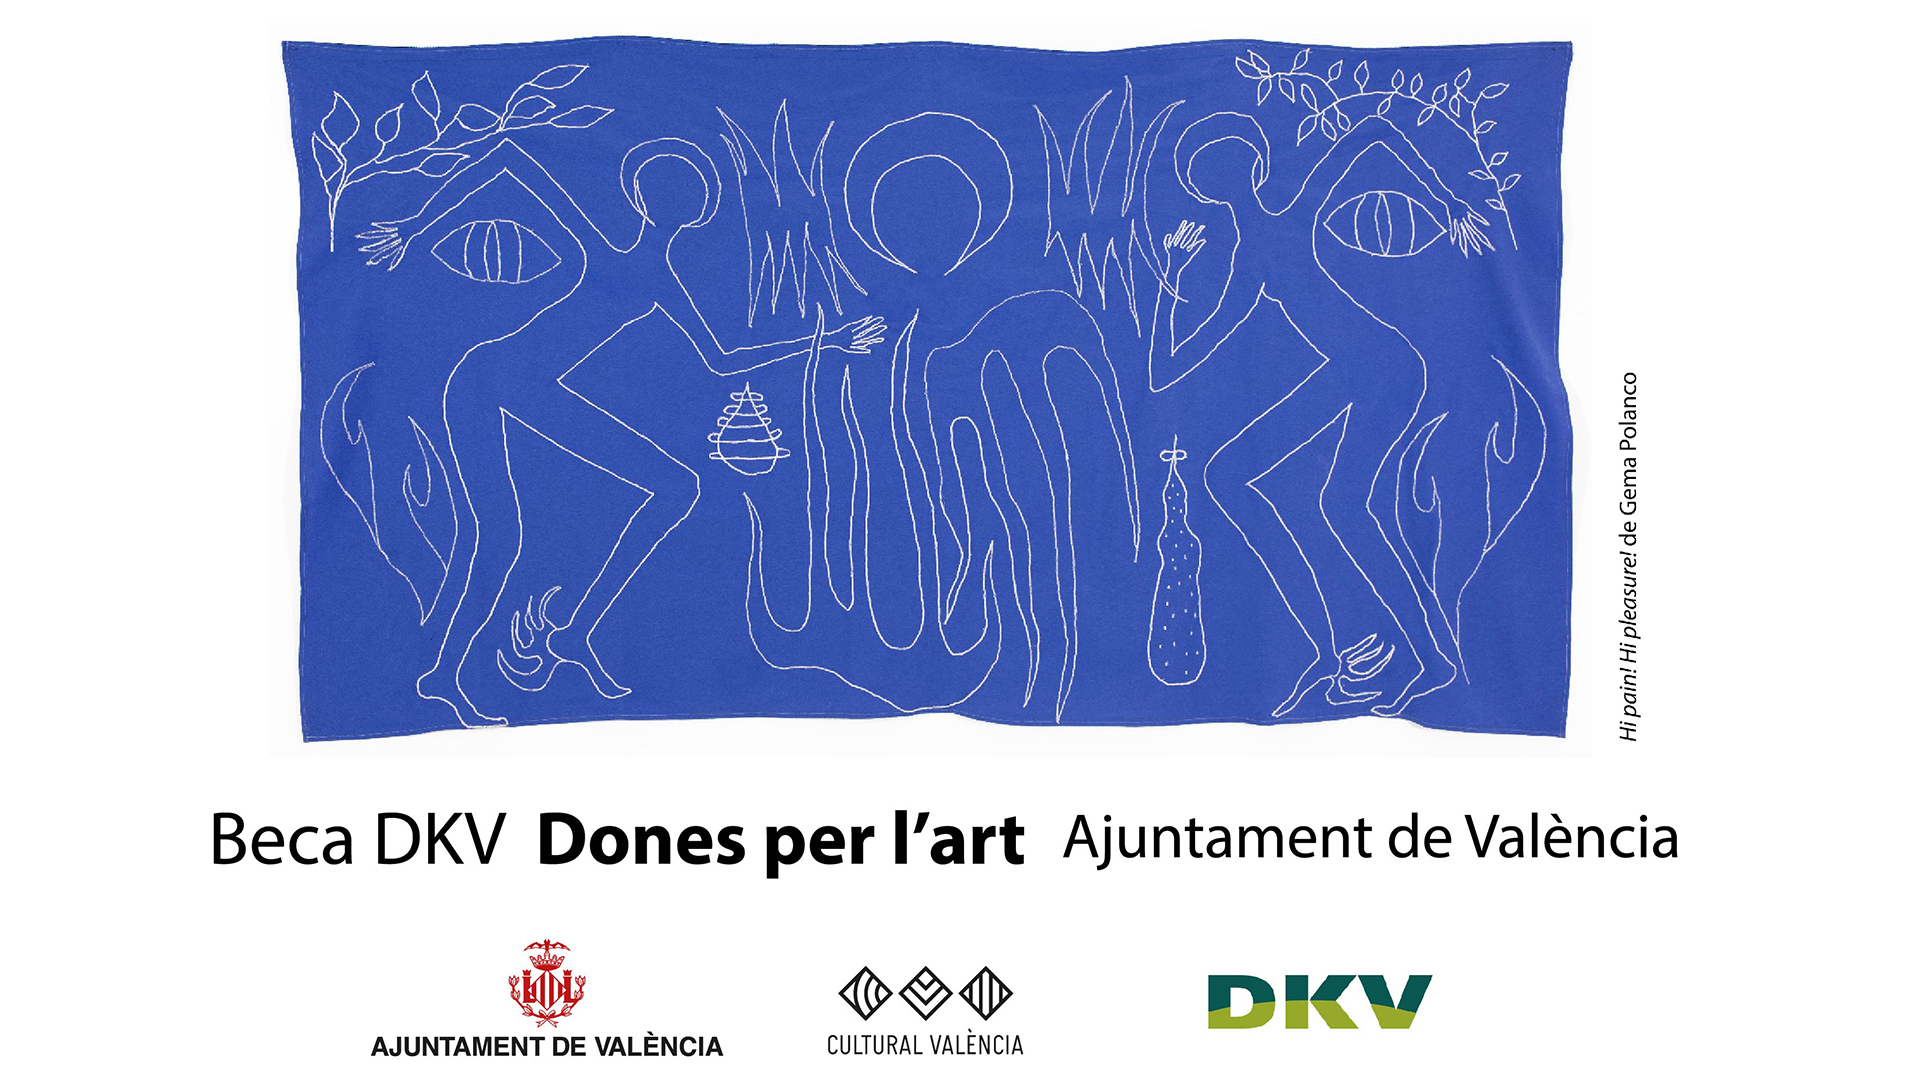 Beca DKV - Dones per l’Art